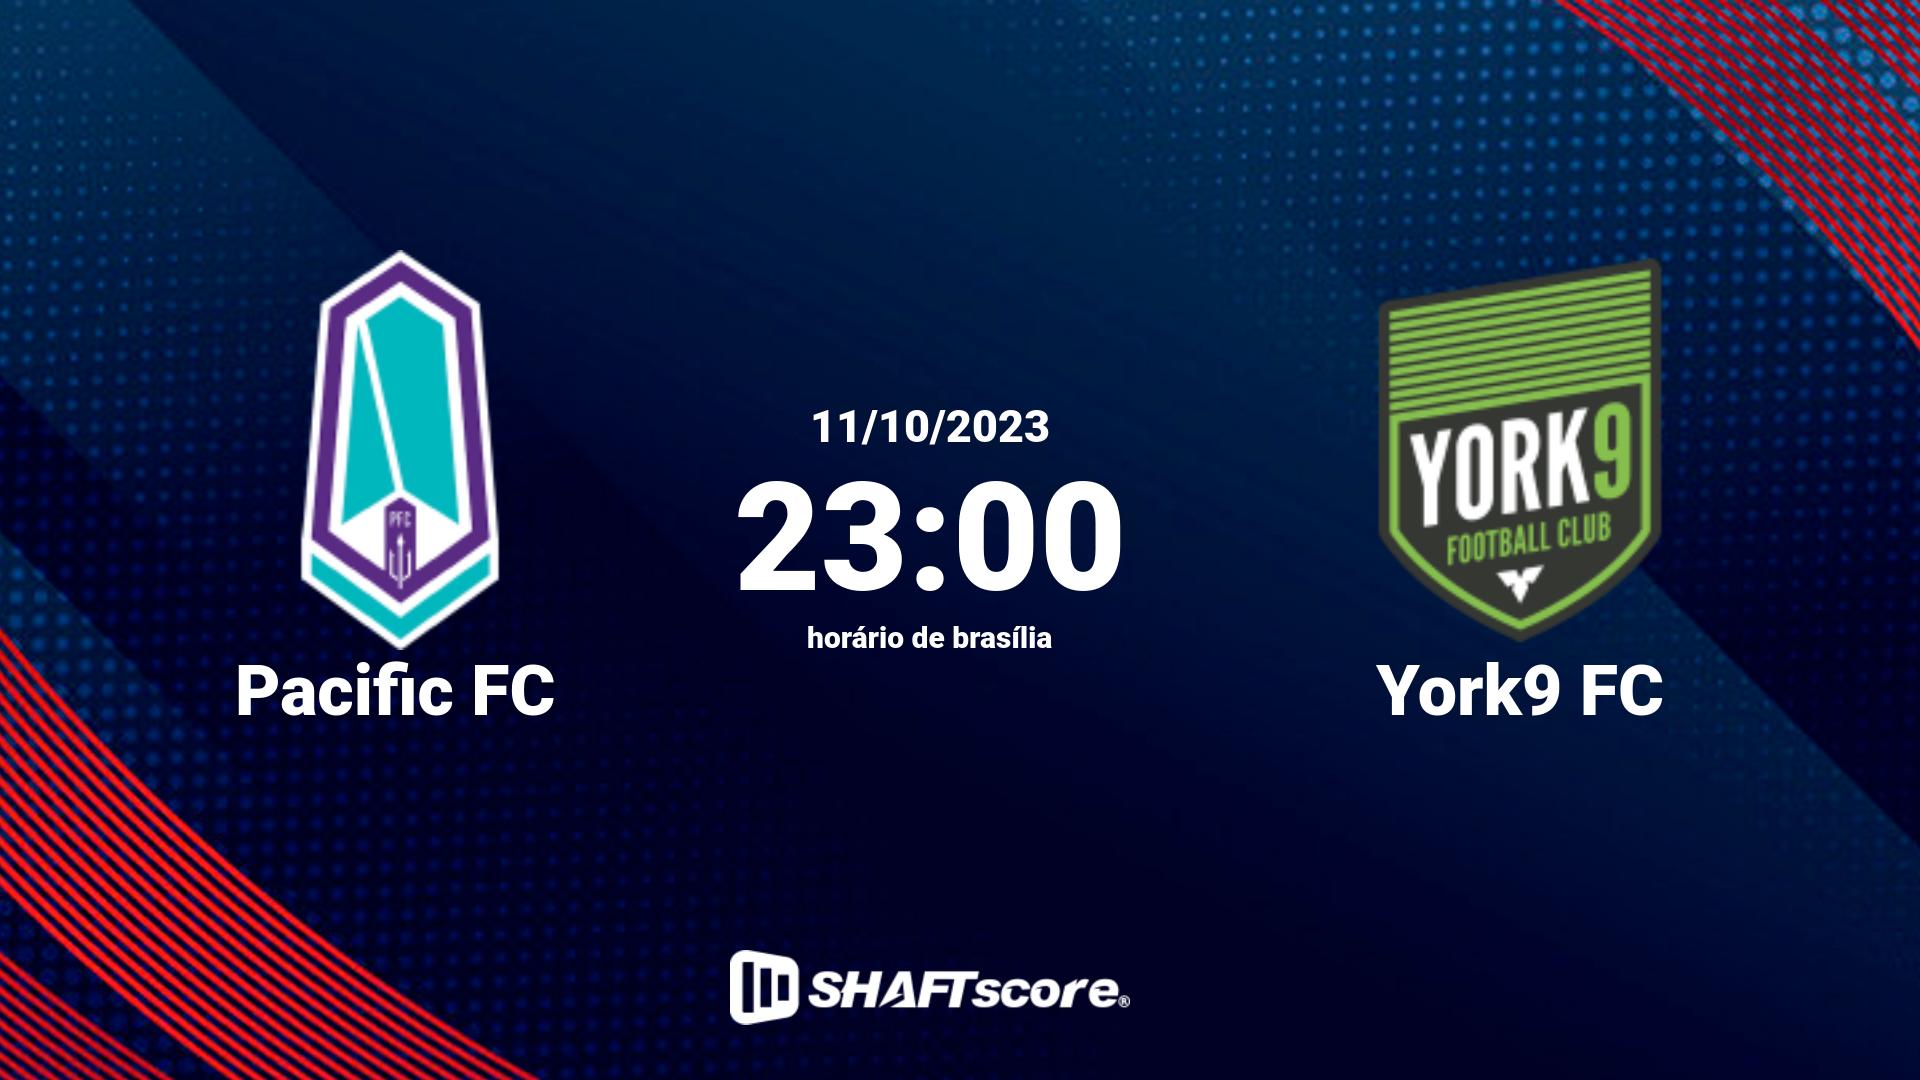 Estatísticas do jogo Pacific FC vs York9 FC 11.10 23:00